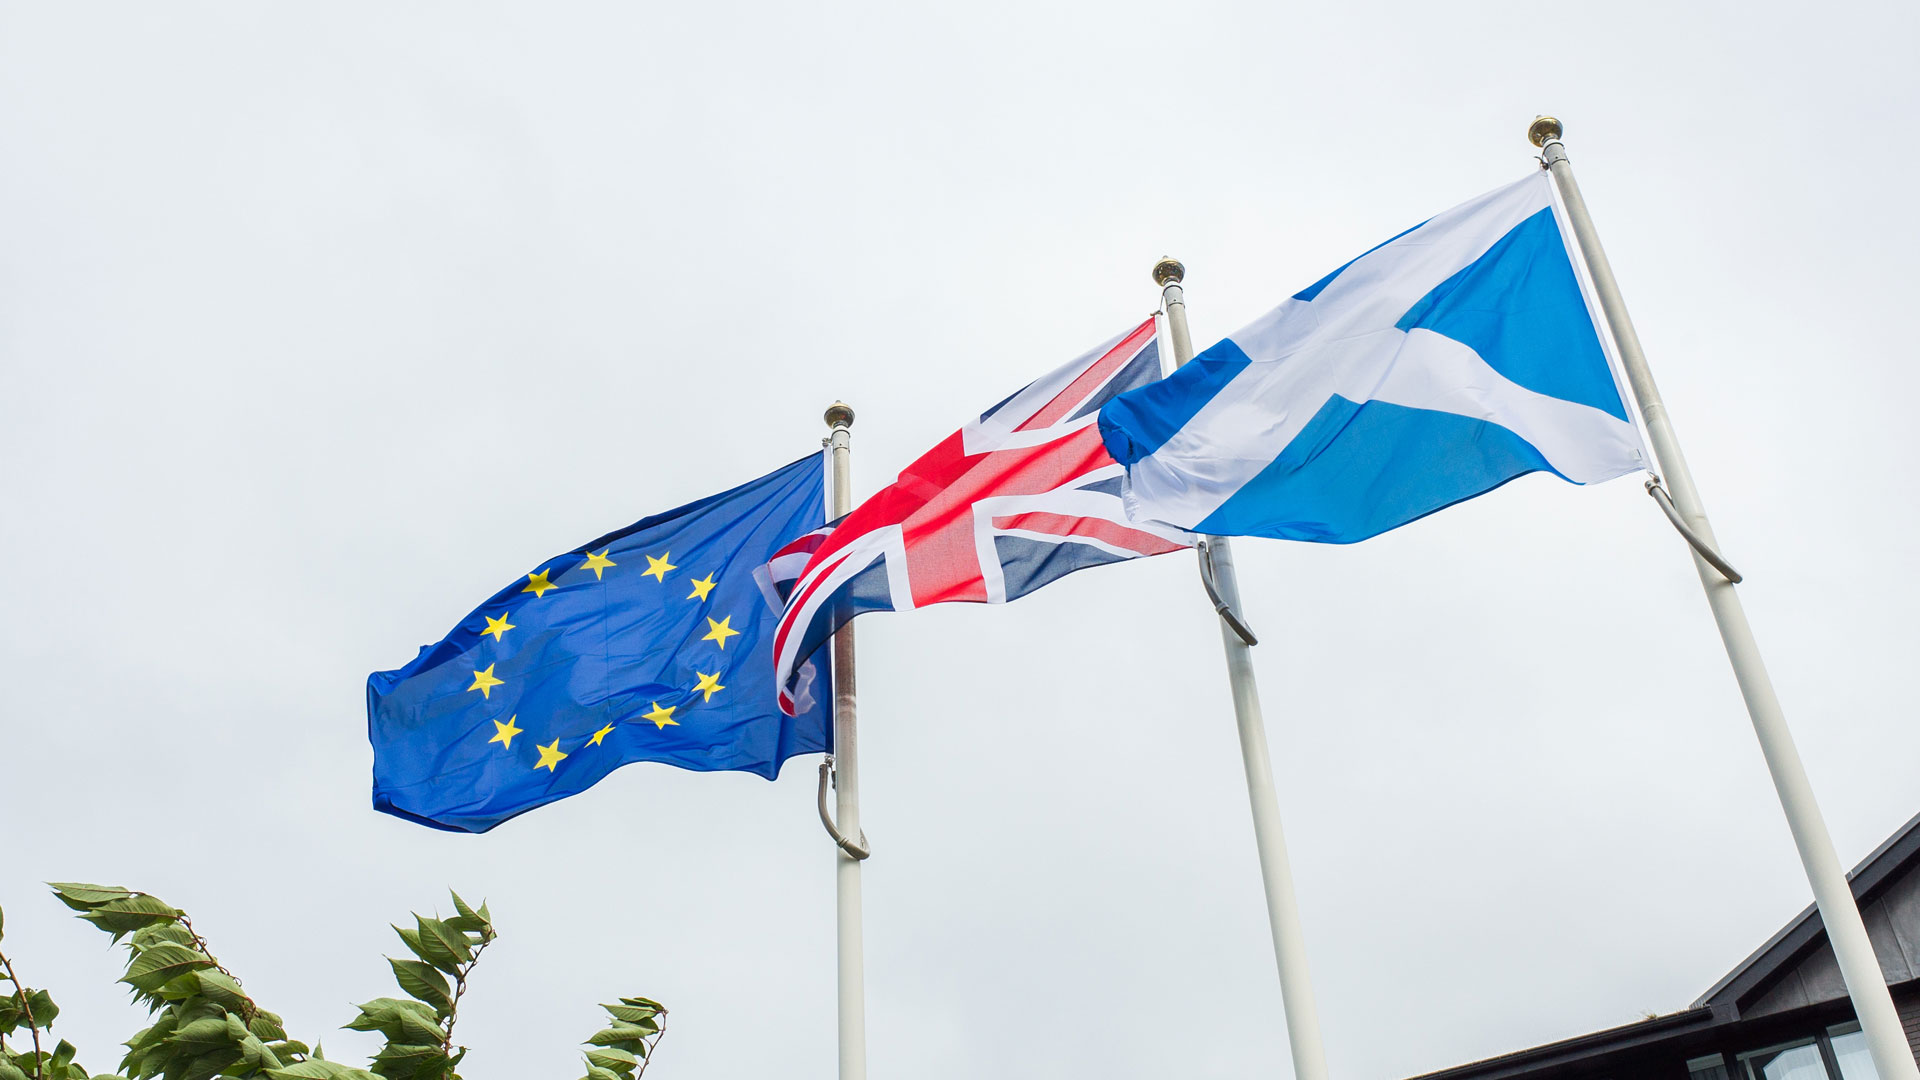 Union Jack, Scottish flag, EU flag